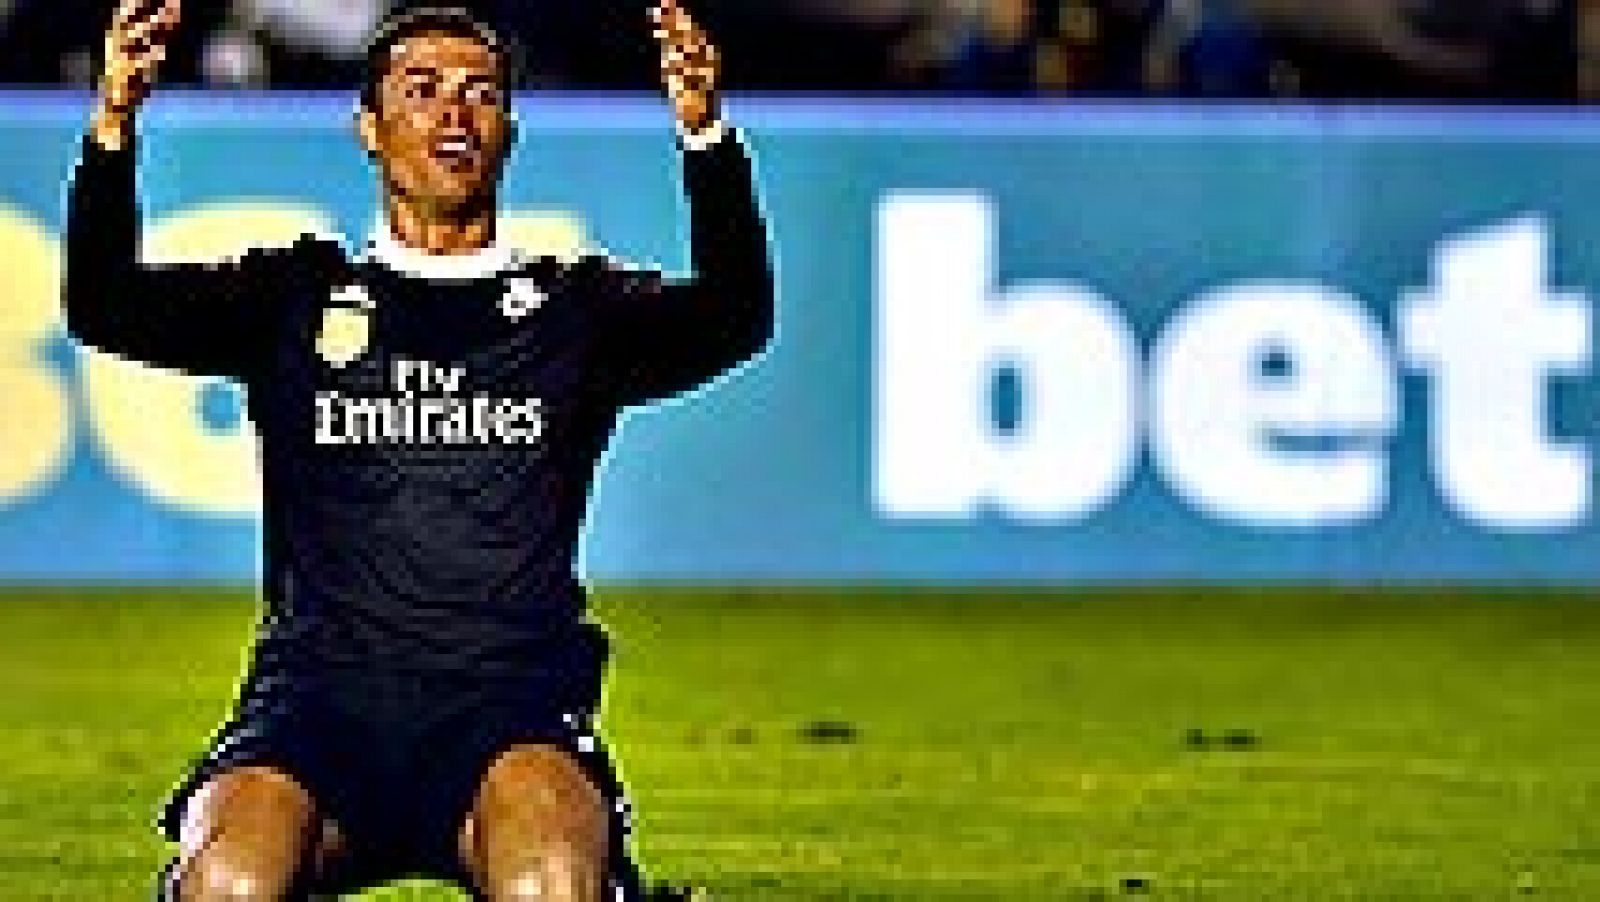 El Real Madrid ha decidido presentar al Comité de Competición de la Real Federación Española de Fútbol (RFEF) alegaciones por la tarjeta amarilla que recibió el portugués Cristiano Ronaldo en Vallecas ante el Rayo, con la que cumple ciclo de amonesta